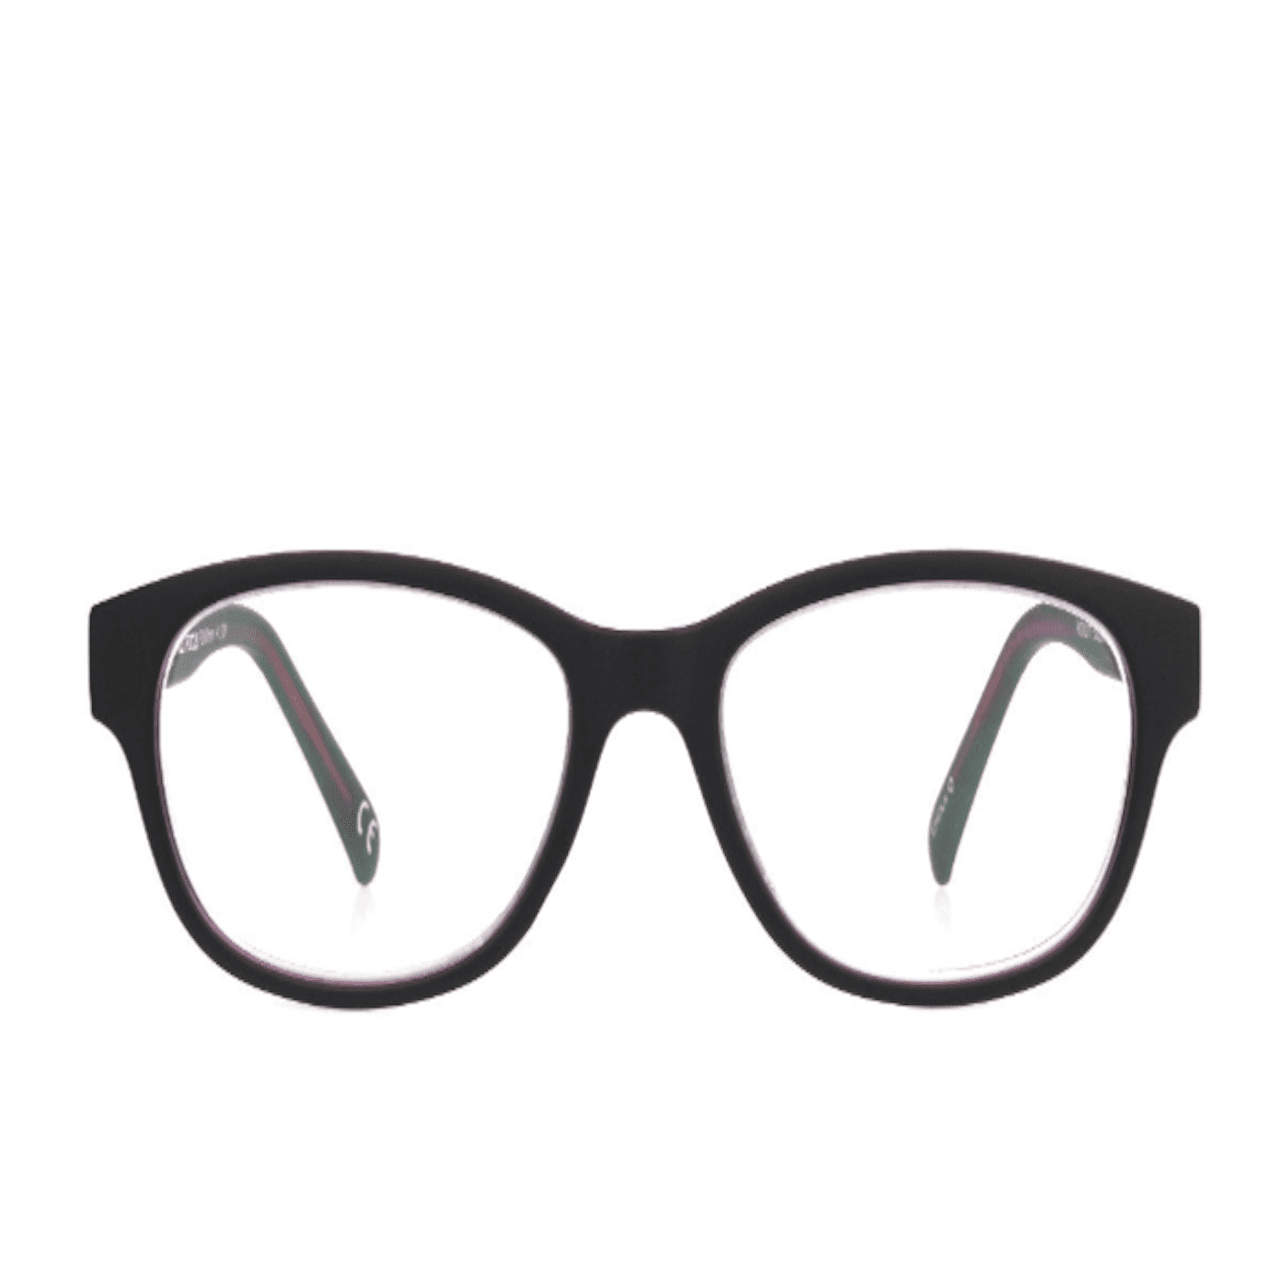 Foster Grant Multi Focus Advanced Reading glasses +2.75 | Walmart Canada